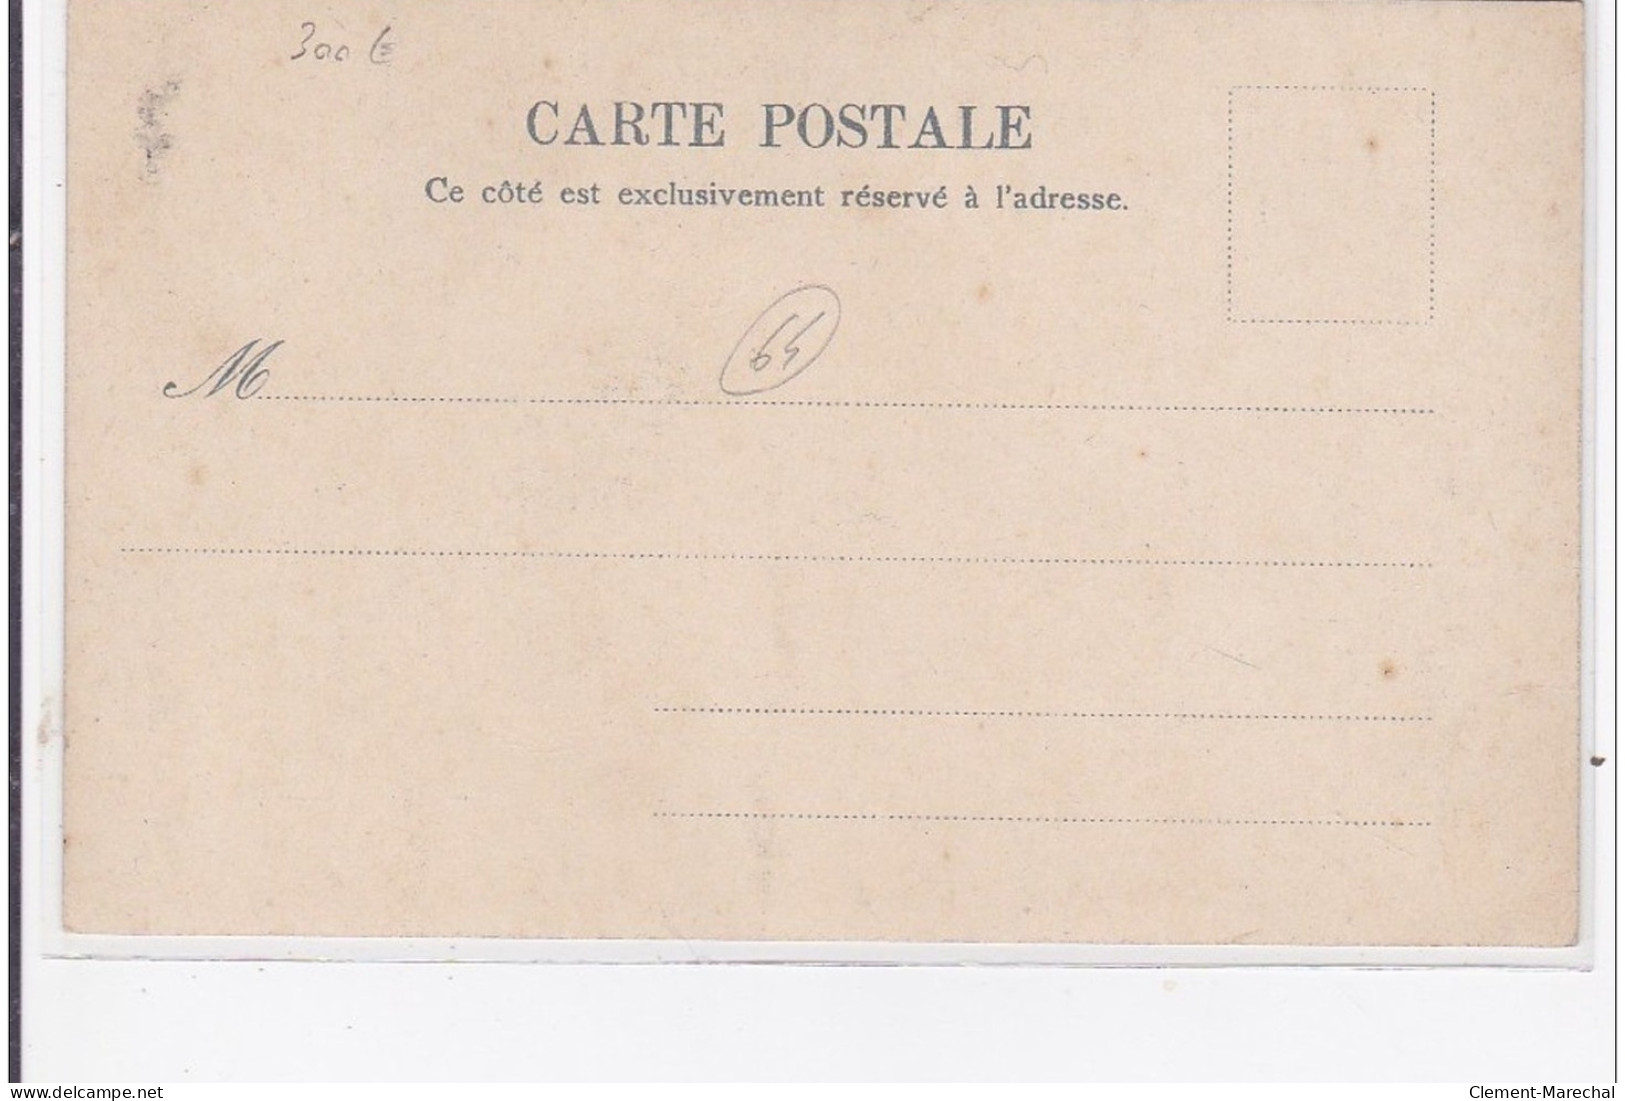 BIARRITZ : Magasin De Cartes Postales """"au Souvenir"""" (publicité) - Très Bon état - Biarritz